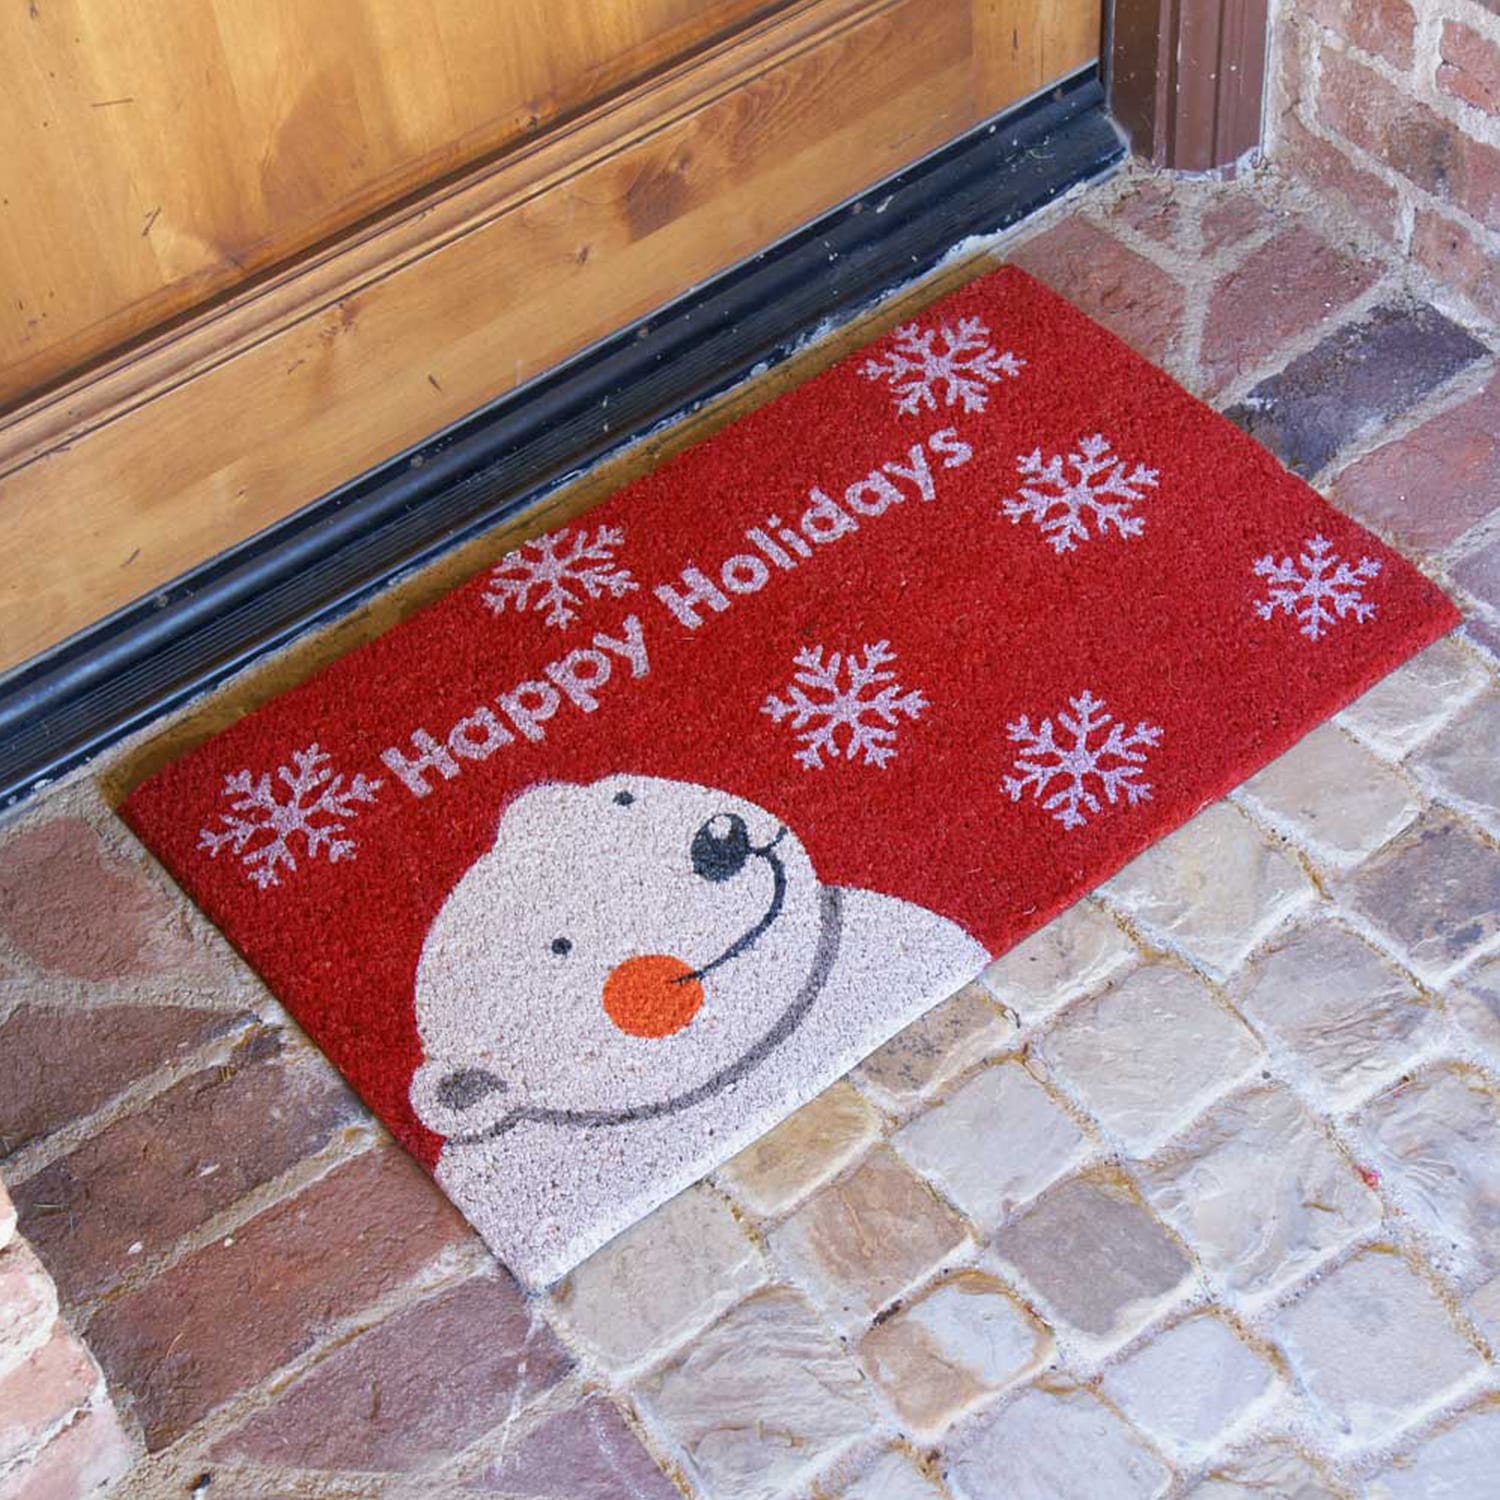 Let It Snow Door Mat Christmas Doormat Snowflake Decor Winter